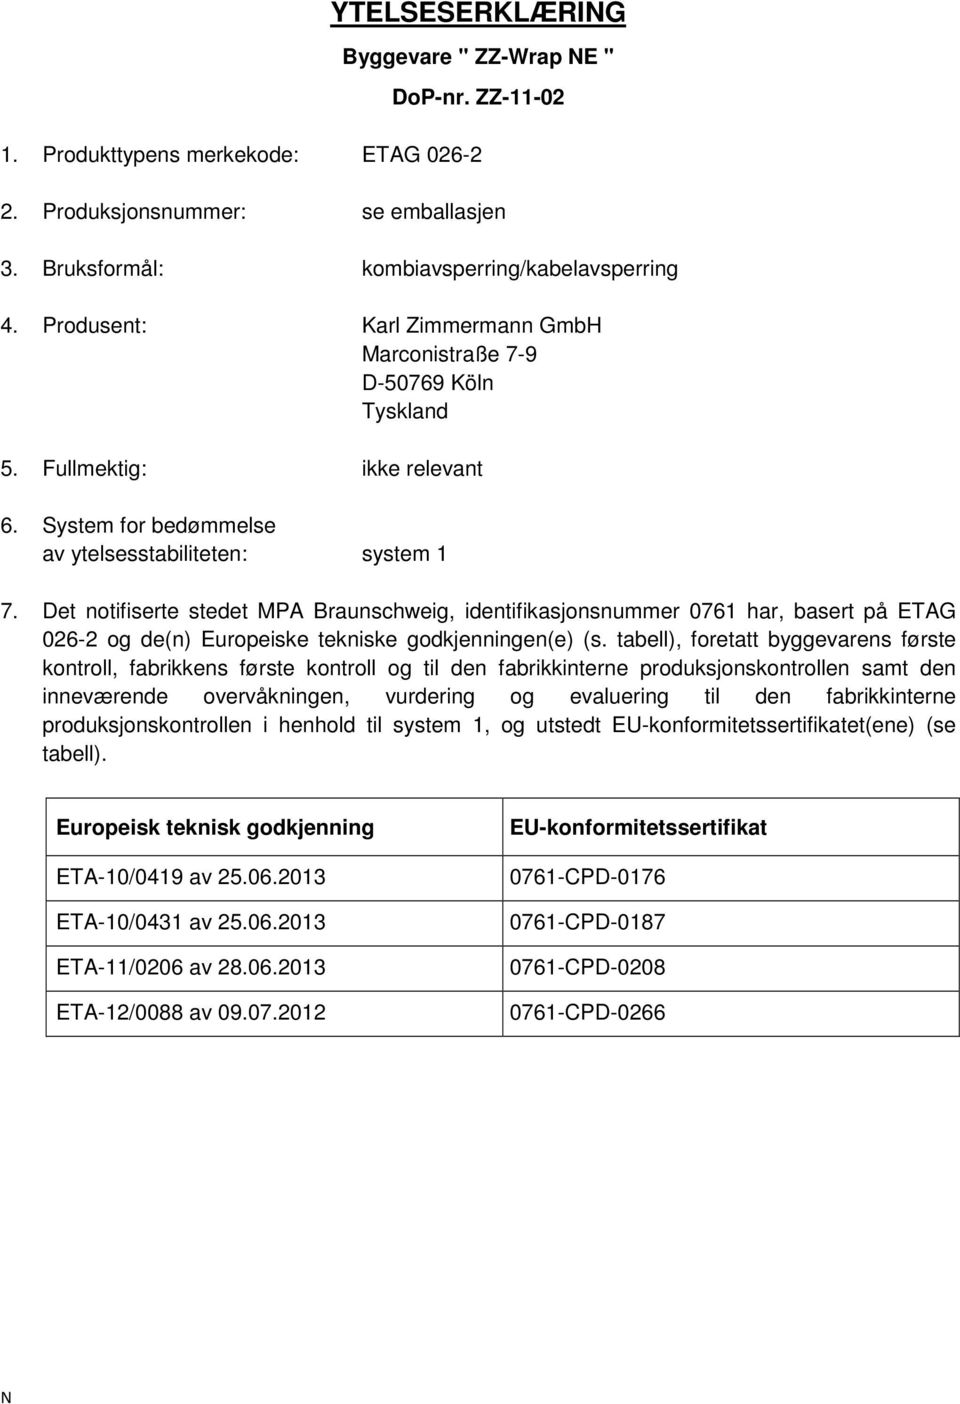 Det notifiserte stedet MPA Braunschweig, identifikasjonsnummer 0761 har, basert på ETAG 026-2 og de(n) Europeiske tekniske godkjenningen(e) (s.